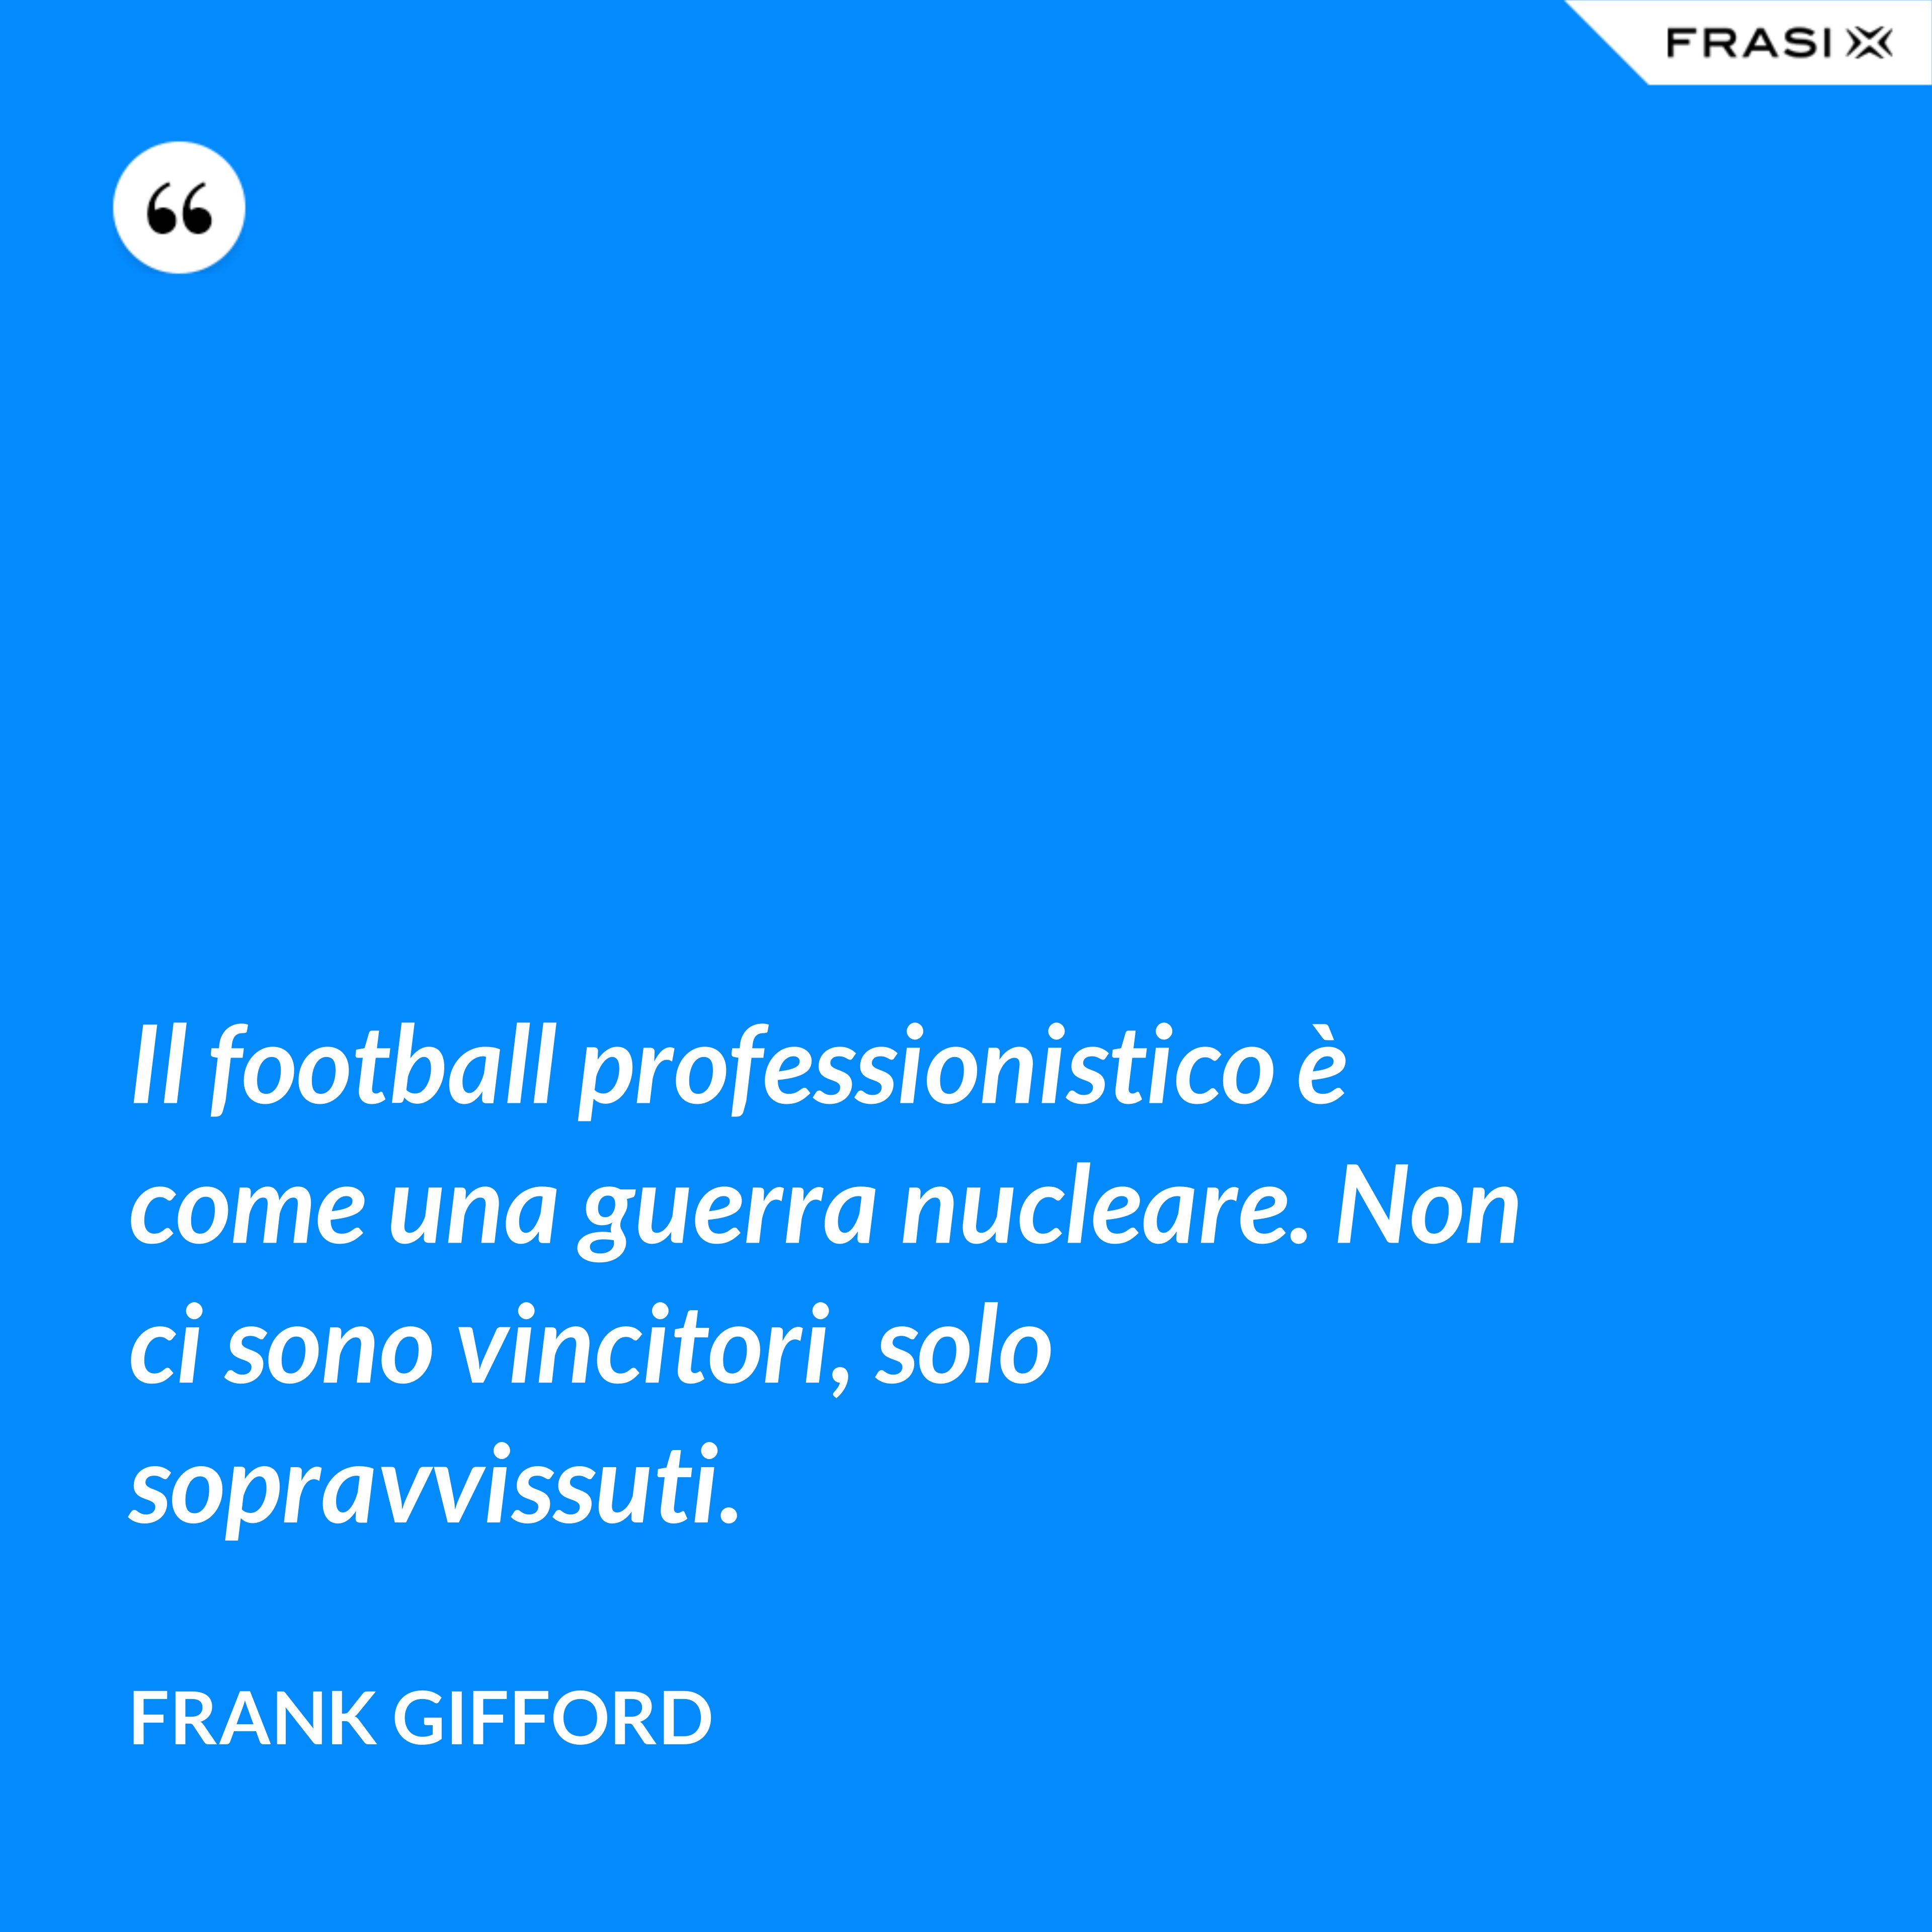 Il football professionistico è come una guerra nucleare. Non ci sono vincitori, solo sopravvissuti. - Frank Gifford